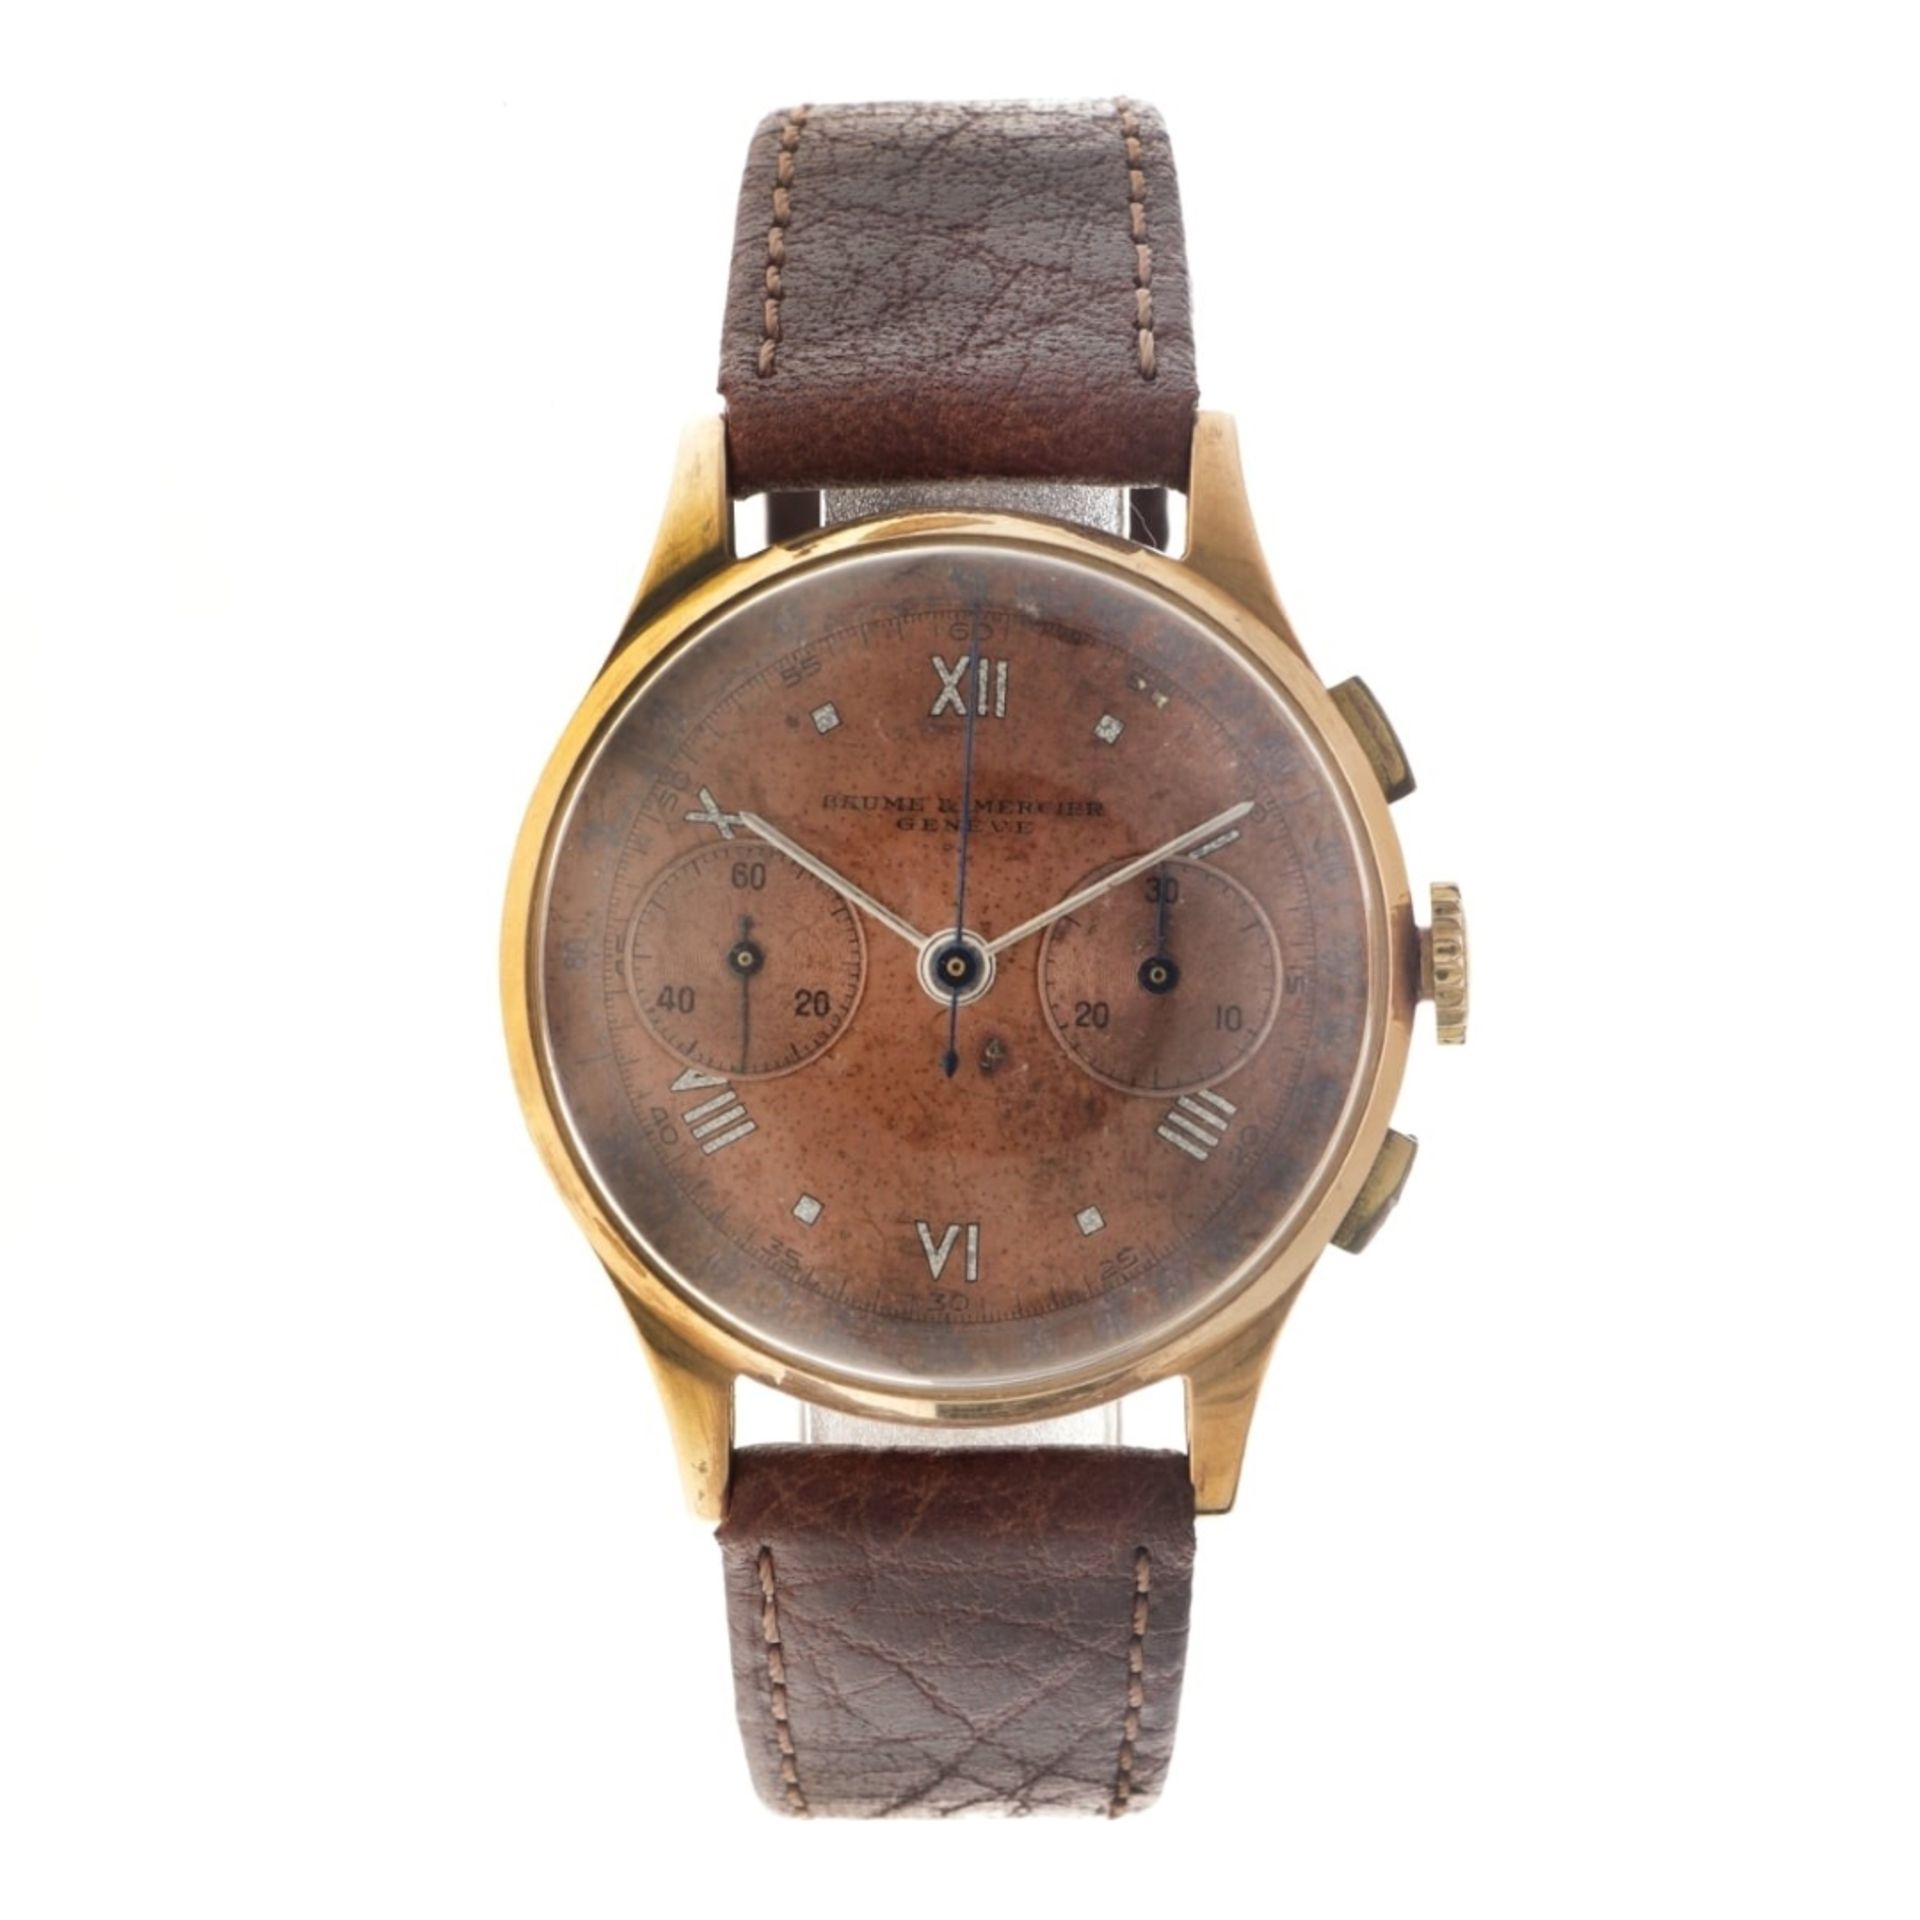 No Reserve - Baume & Mercier vintage 18K. chronograph - Men's watch.